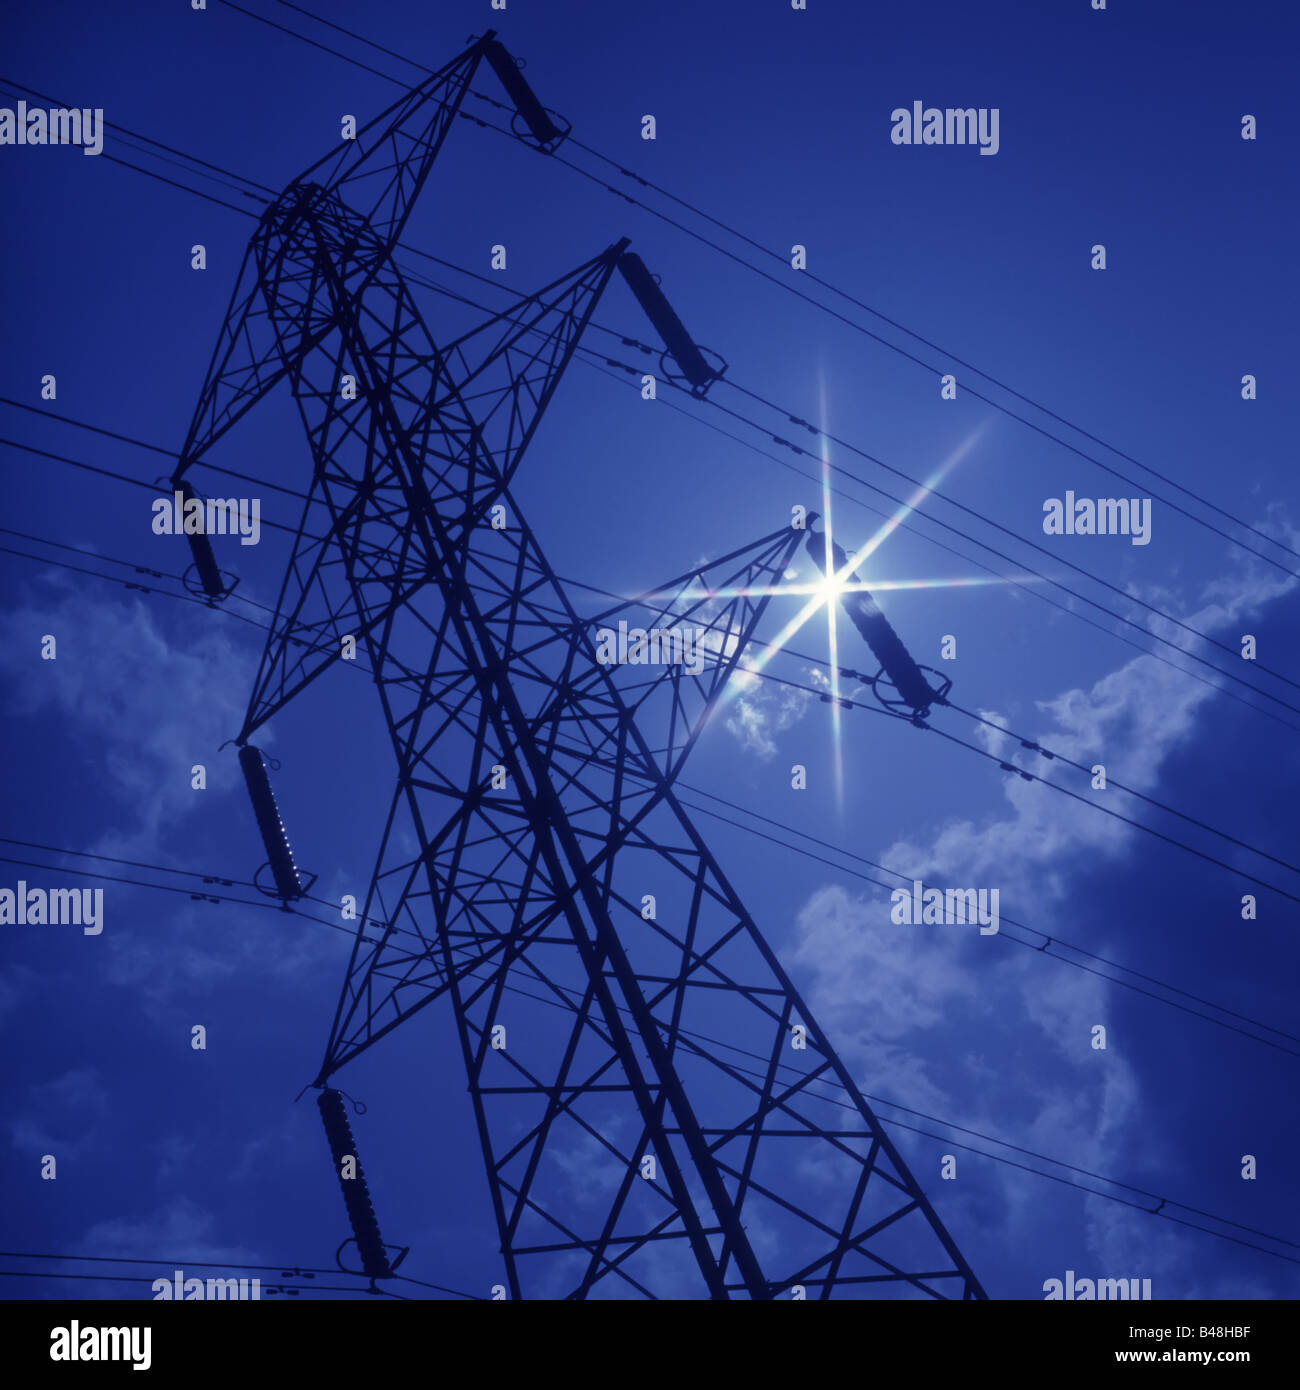 Starkstrom Kabel und pylon Winkelansicht im Sonnenschein mit Filter Blau zu kühlen moonlight Effekt Essex England UK erstellen Stockfoto